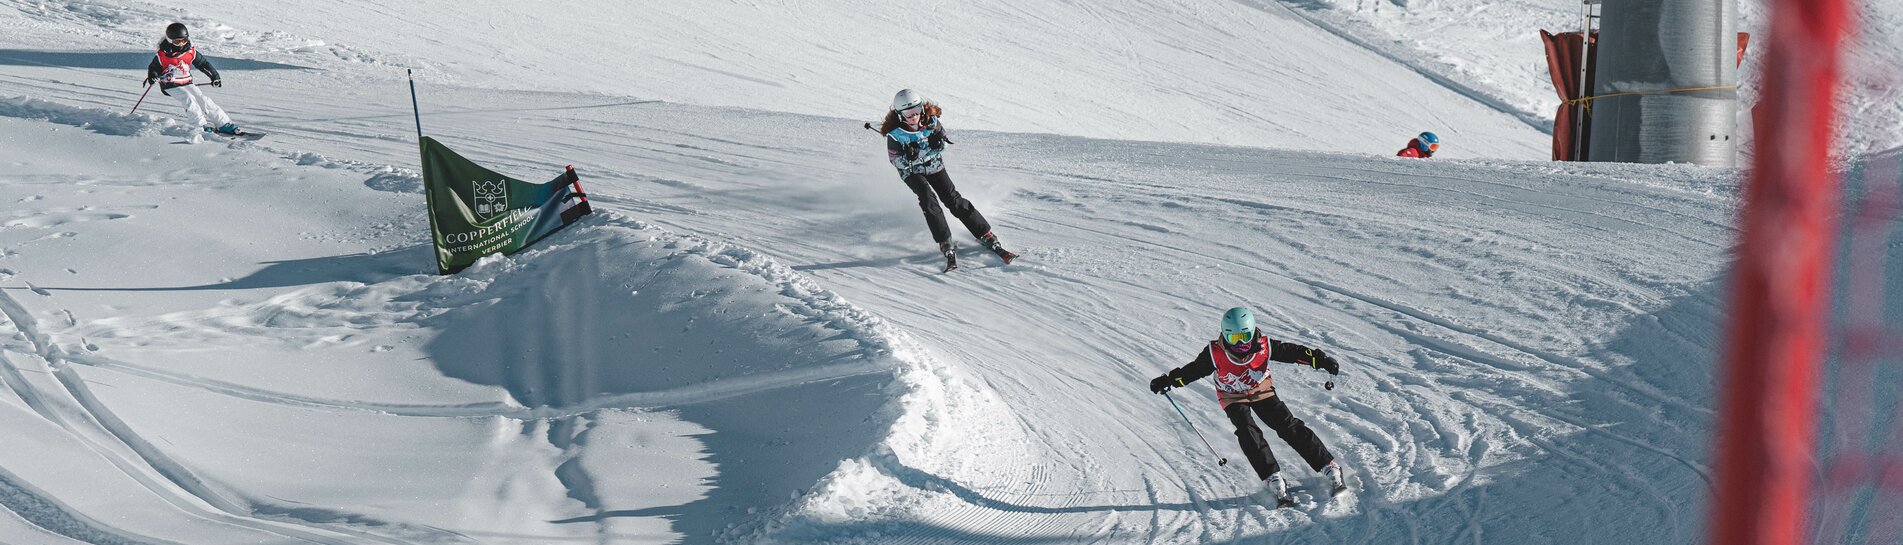 Copperfield School Skicross, Verbier 4Vallées